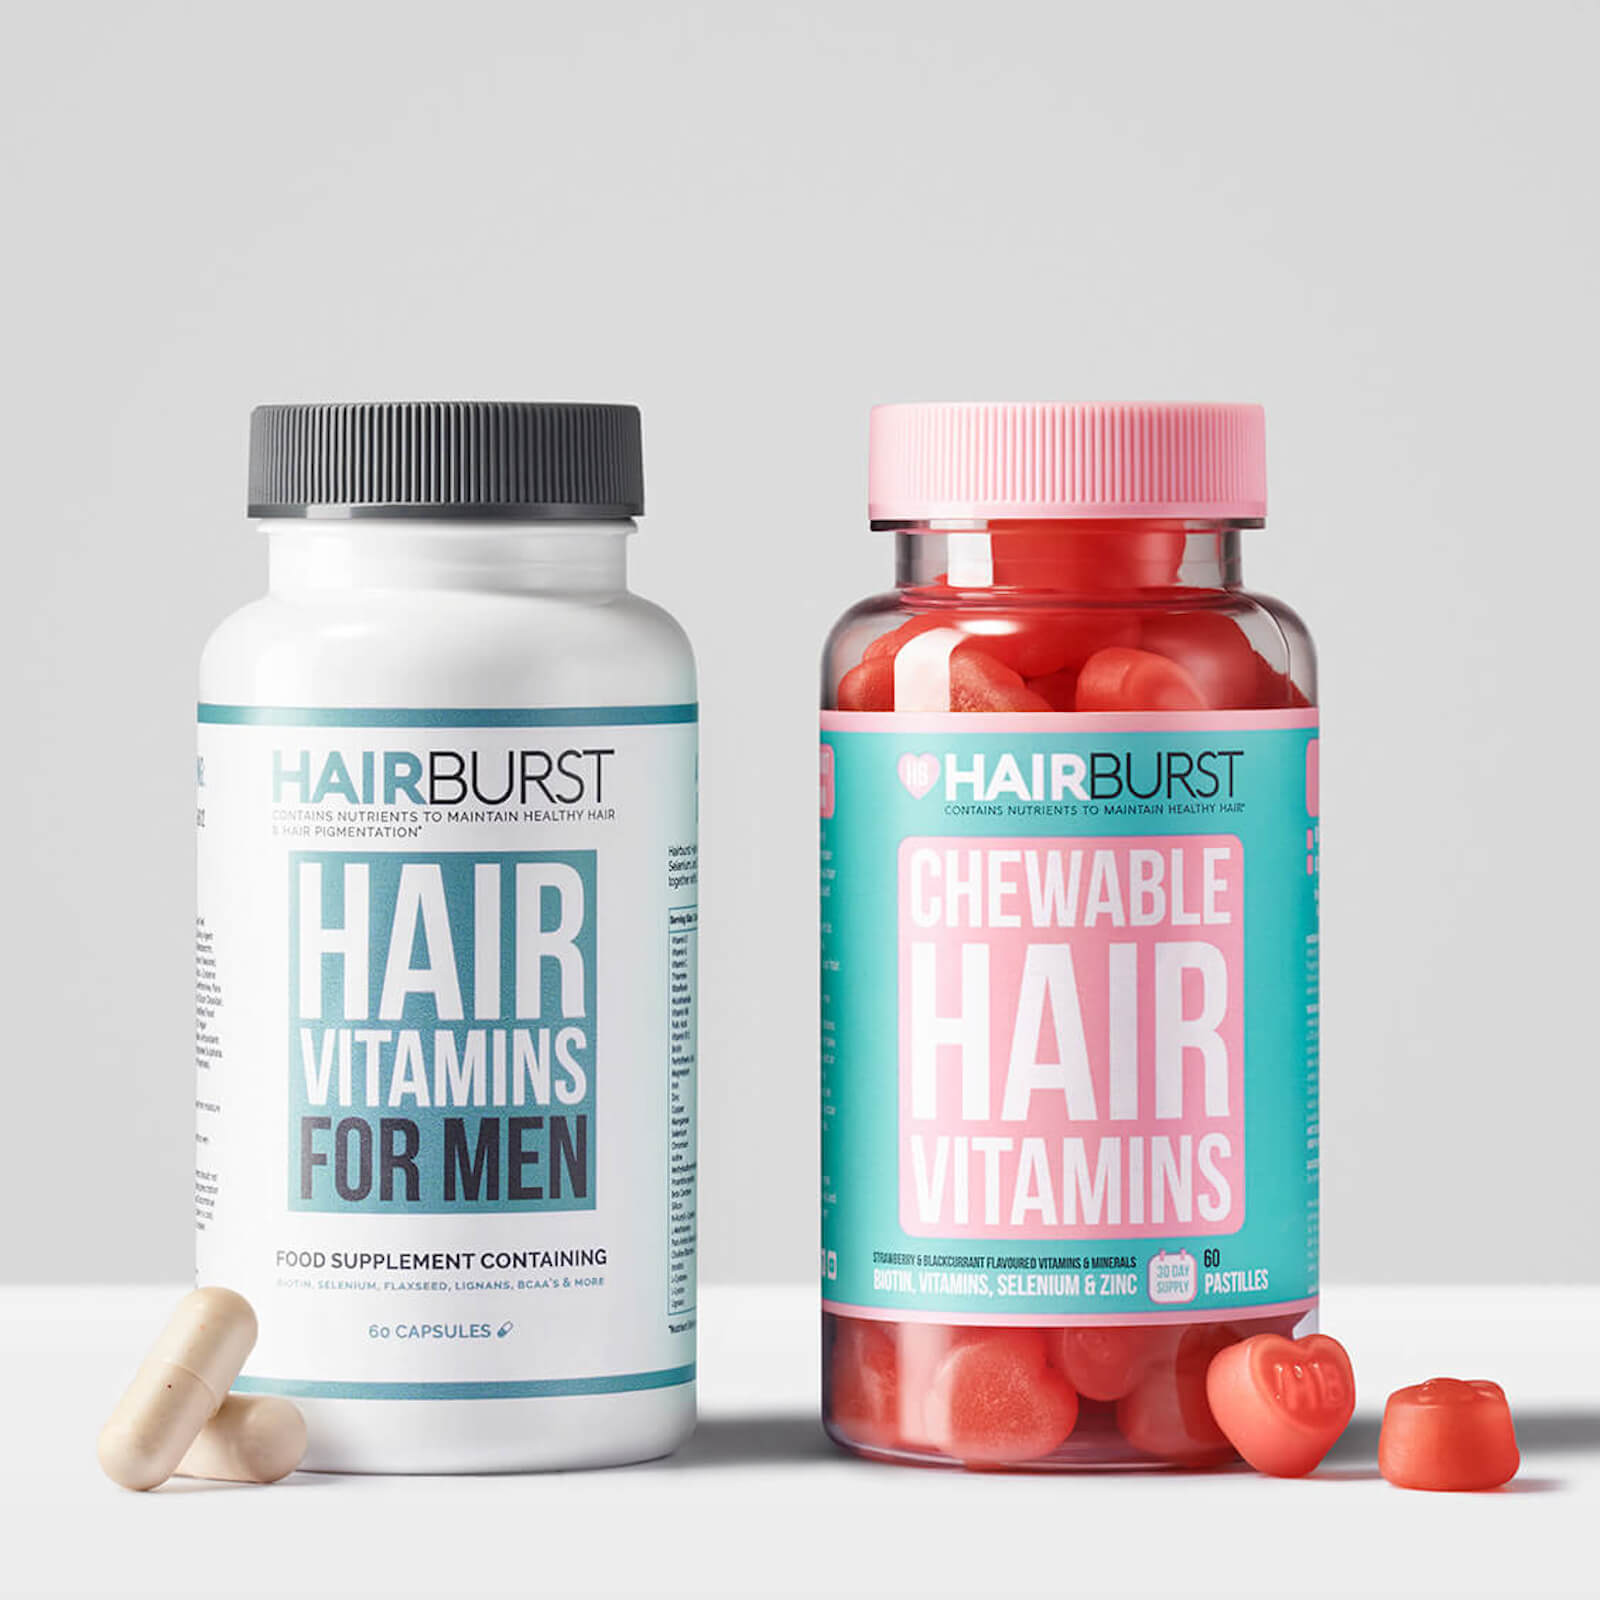 Hairburst His & Hers Hair Vitamin Bundle (Worth £49.98)